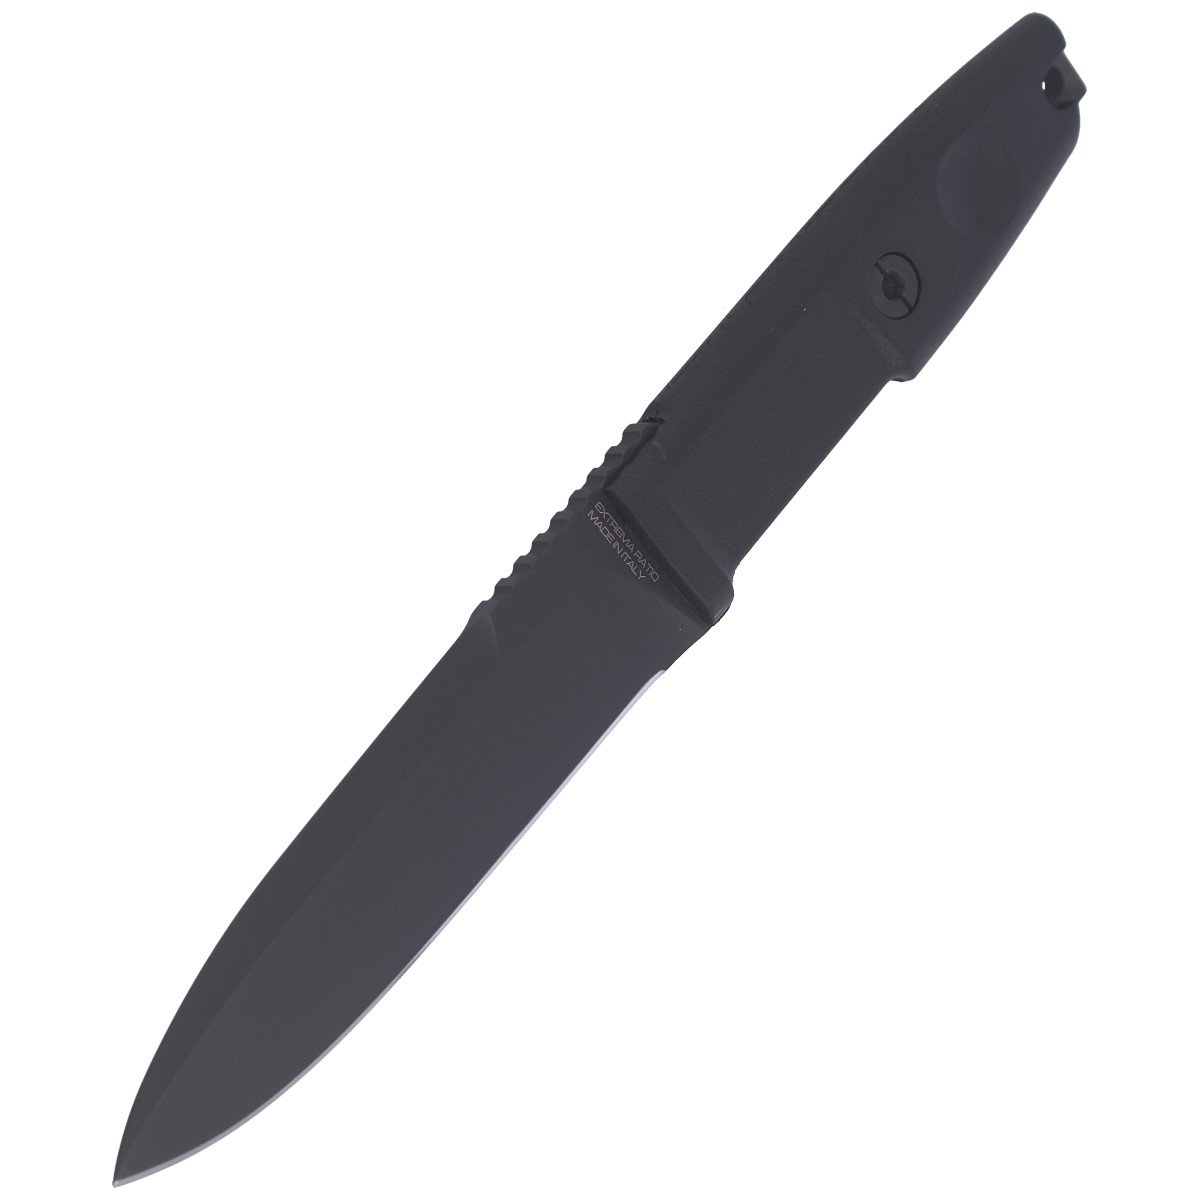 Extrema Ratio Scout 2 knife, Black Forprene, Black N690 (04.1000.0481/BLK)